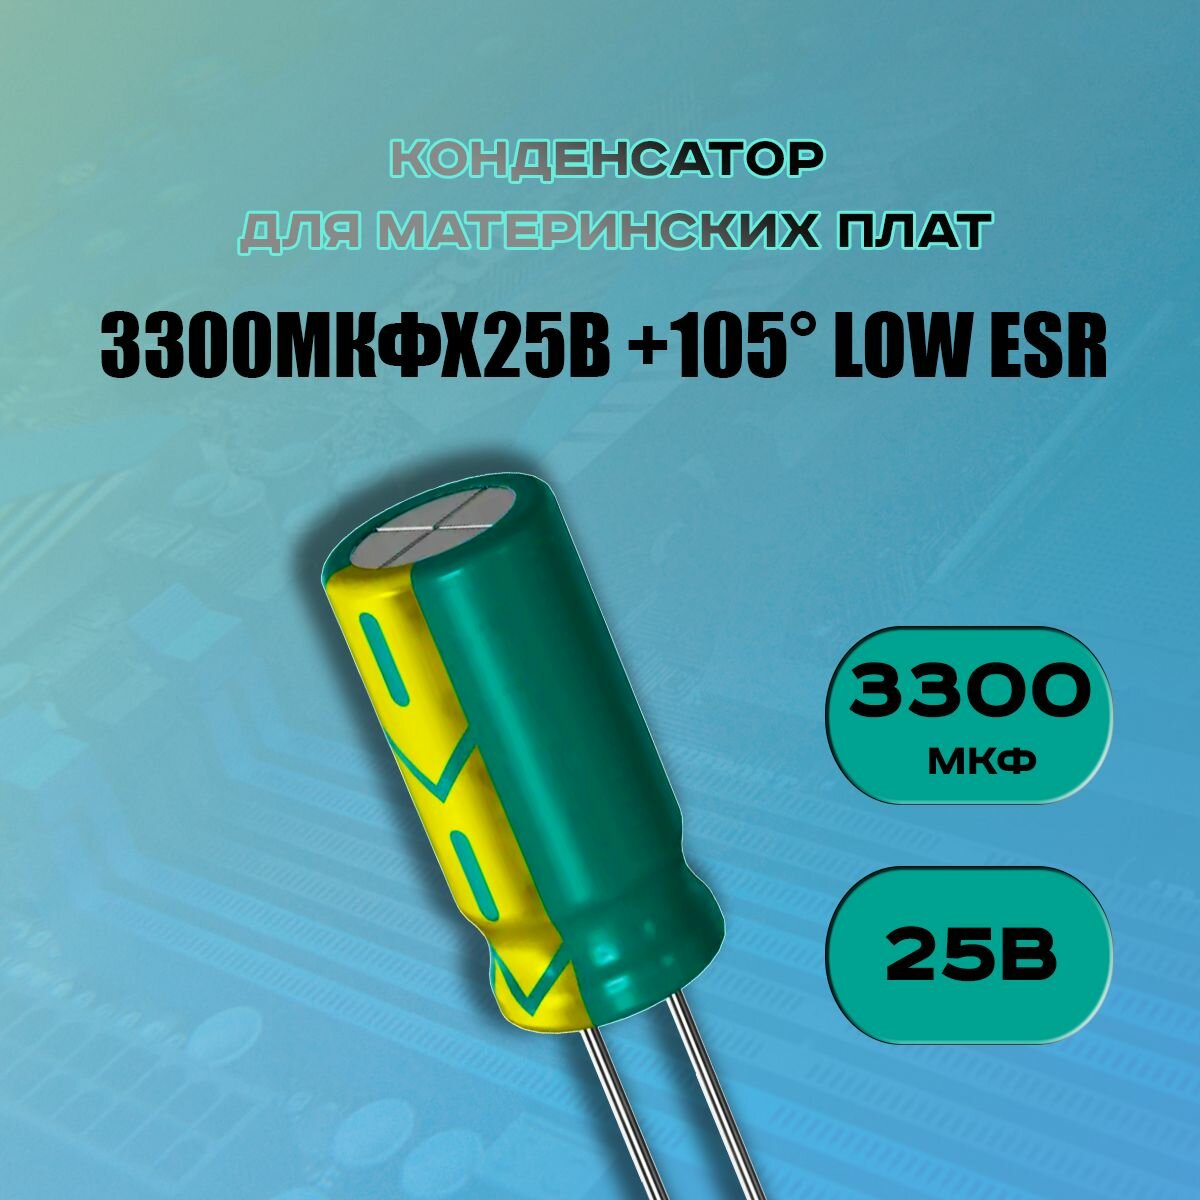 Конденсатор для материнской платы 3300 микрофарат 25 Вольт (3300uf 25V WL +105 LOW ESR) - 1 шт.